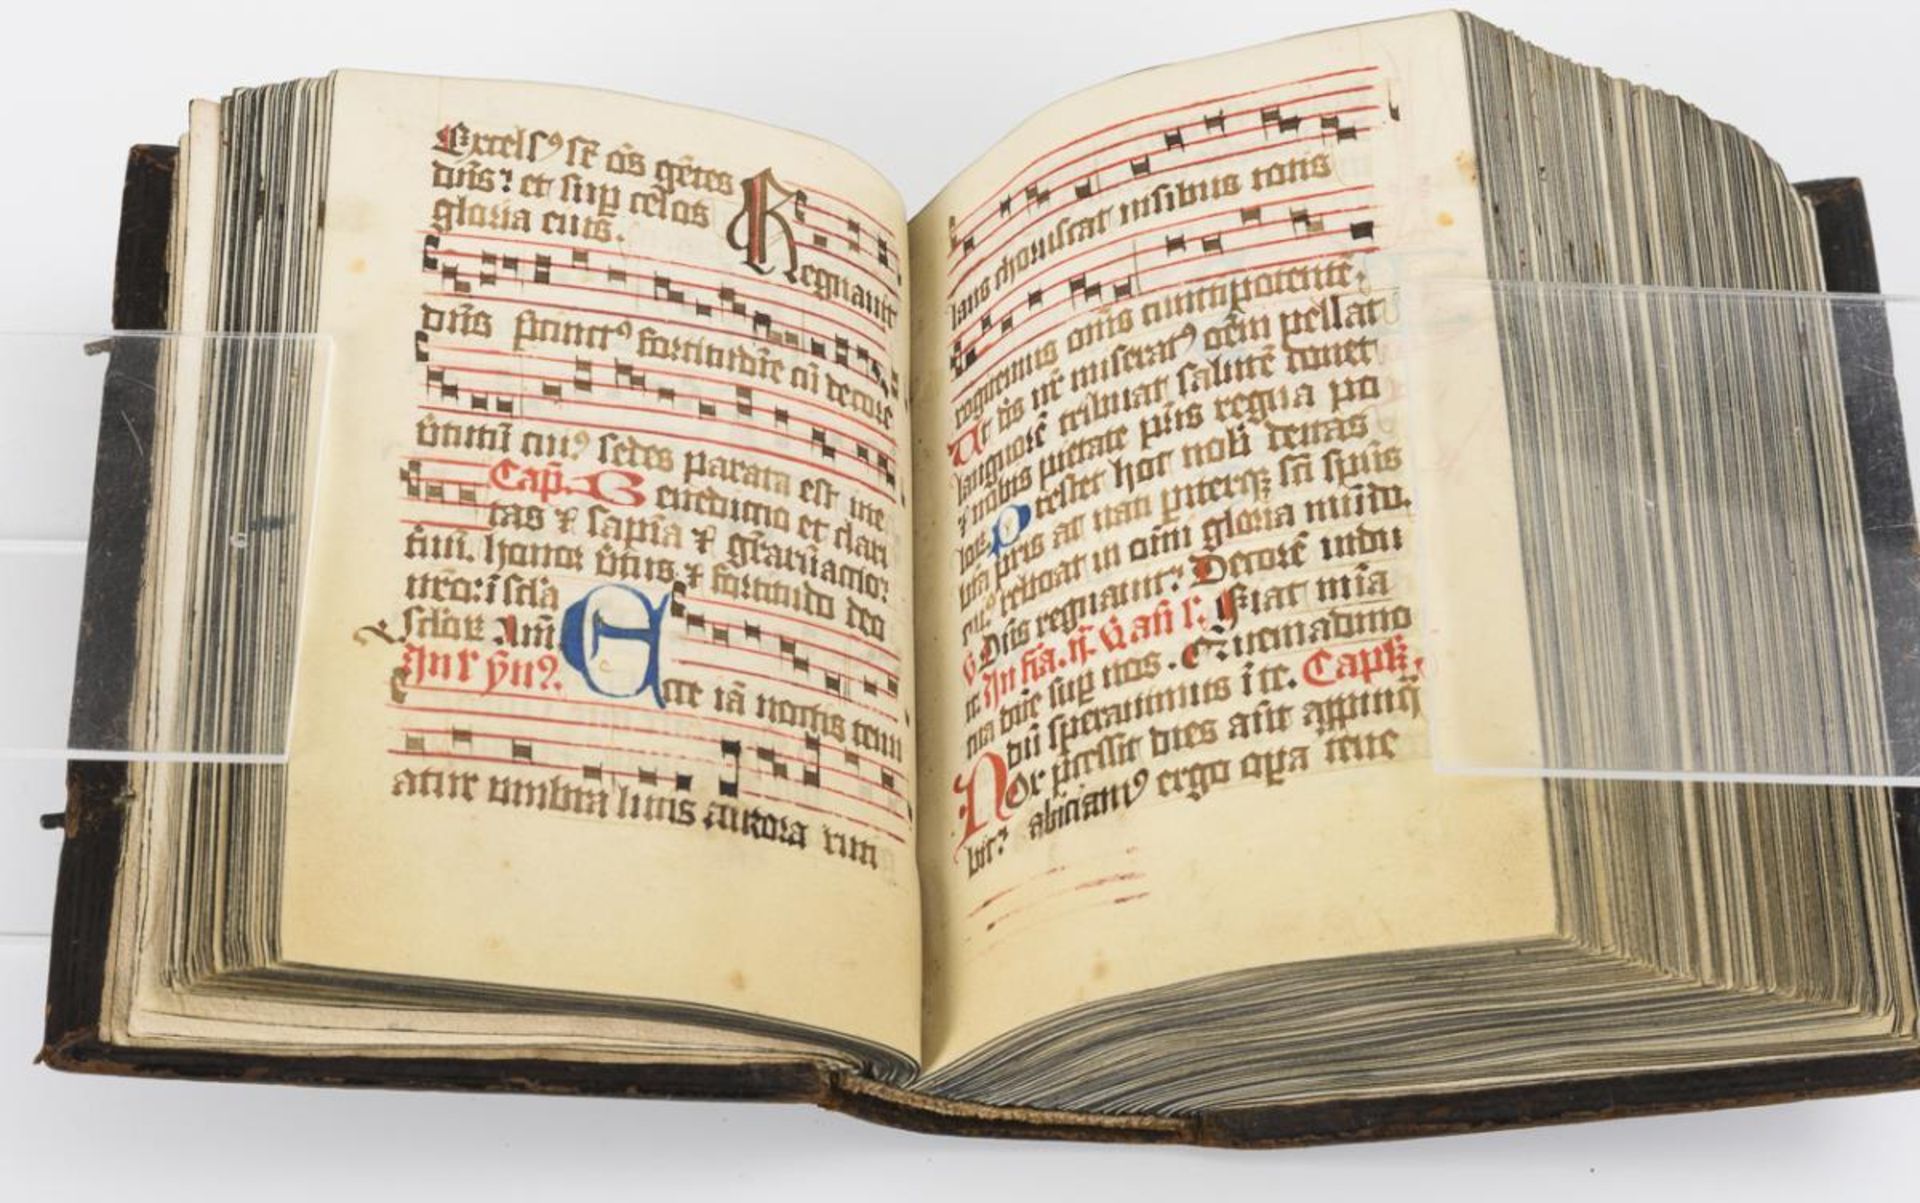 Mittelalterliche Handschrift - Brevier. - Image 23 of 25